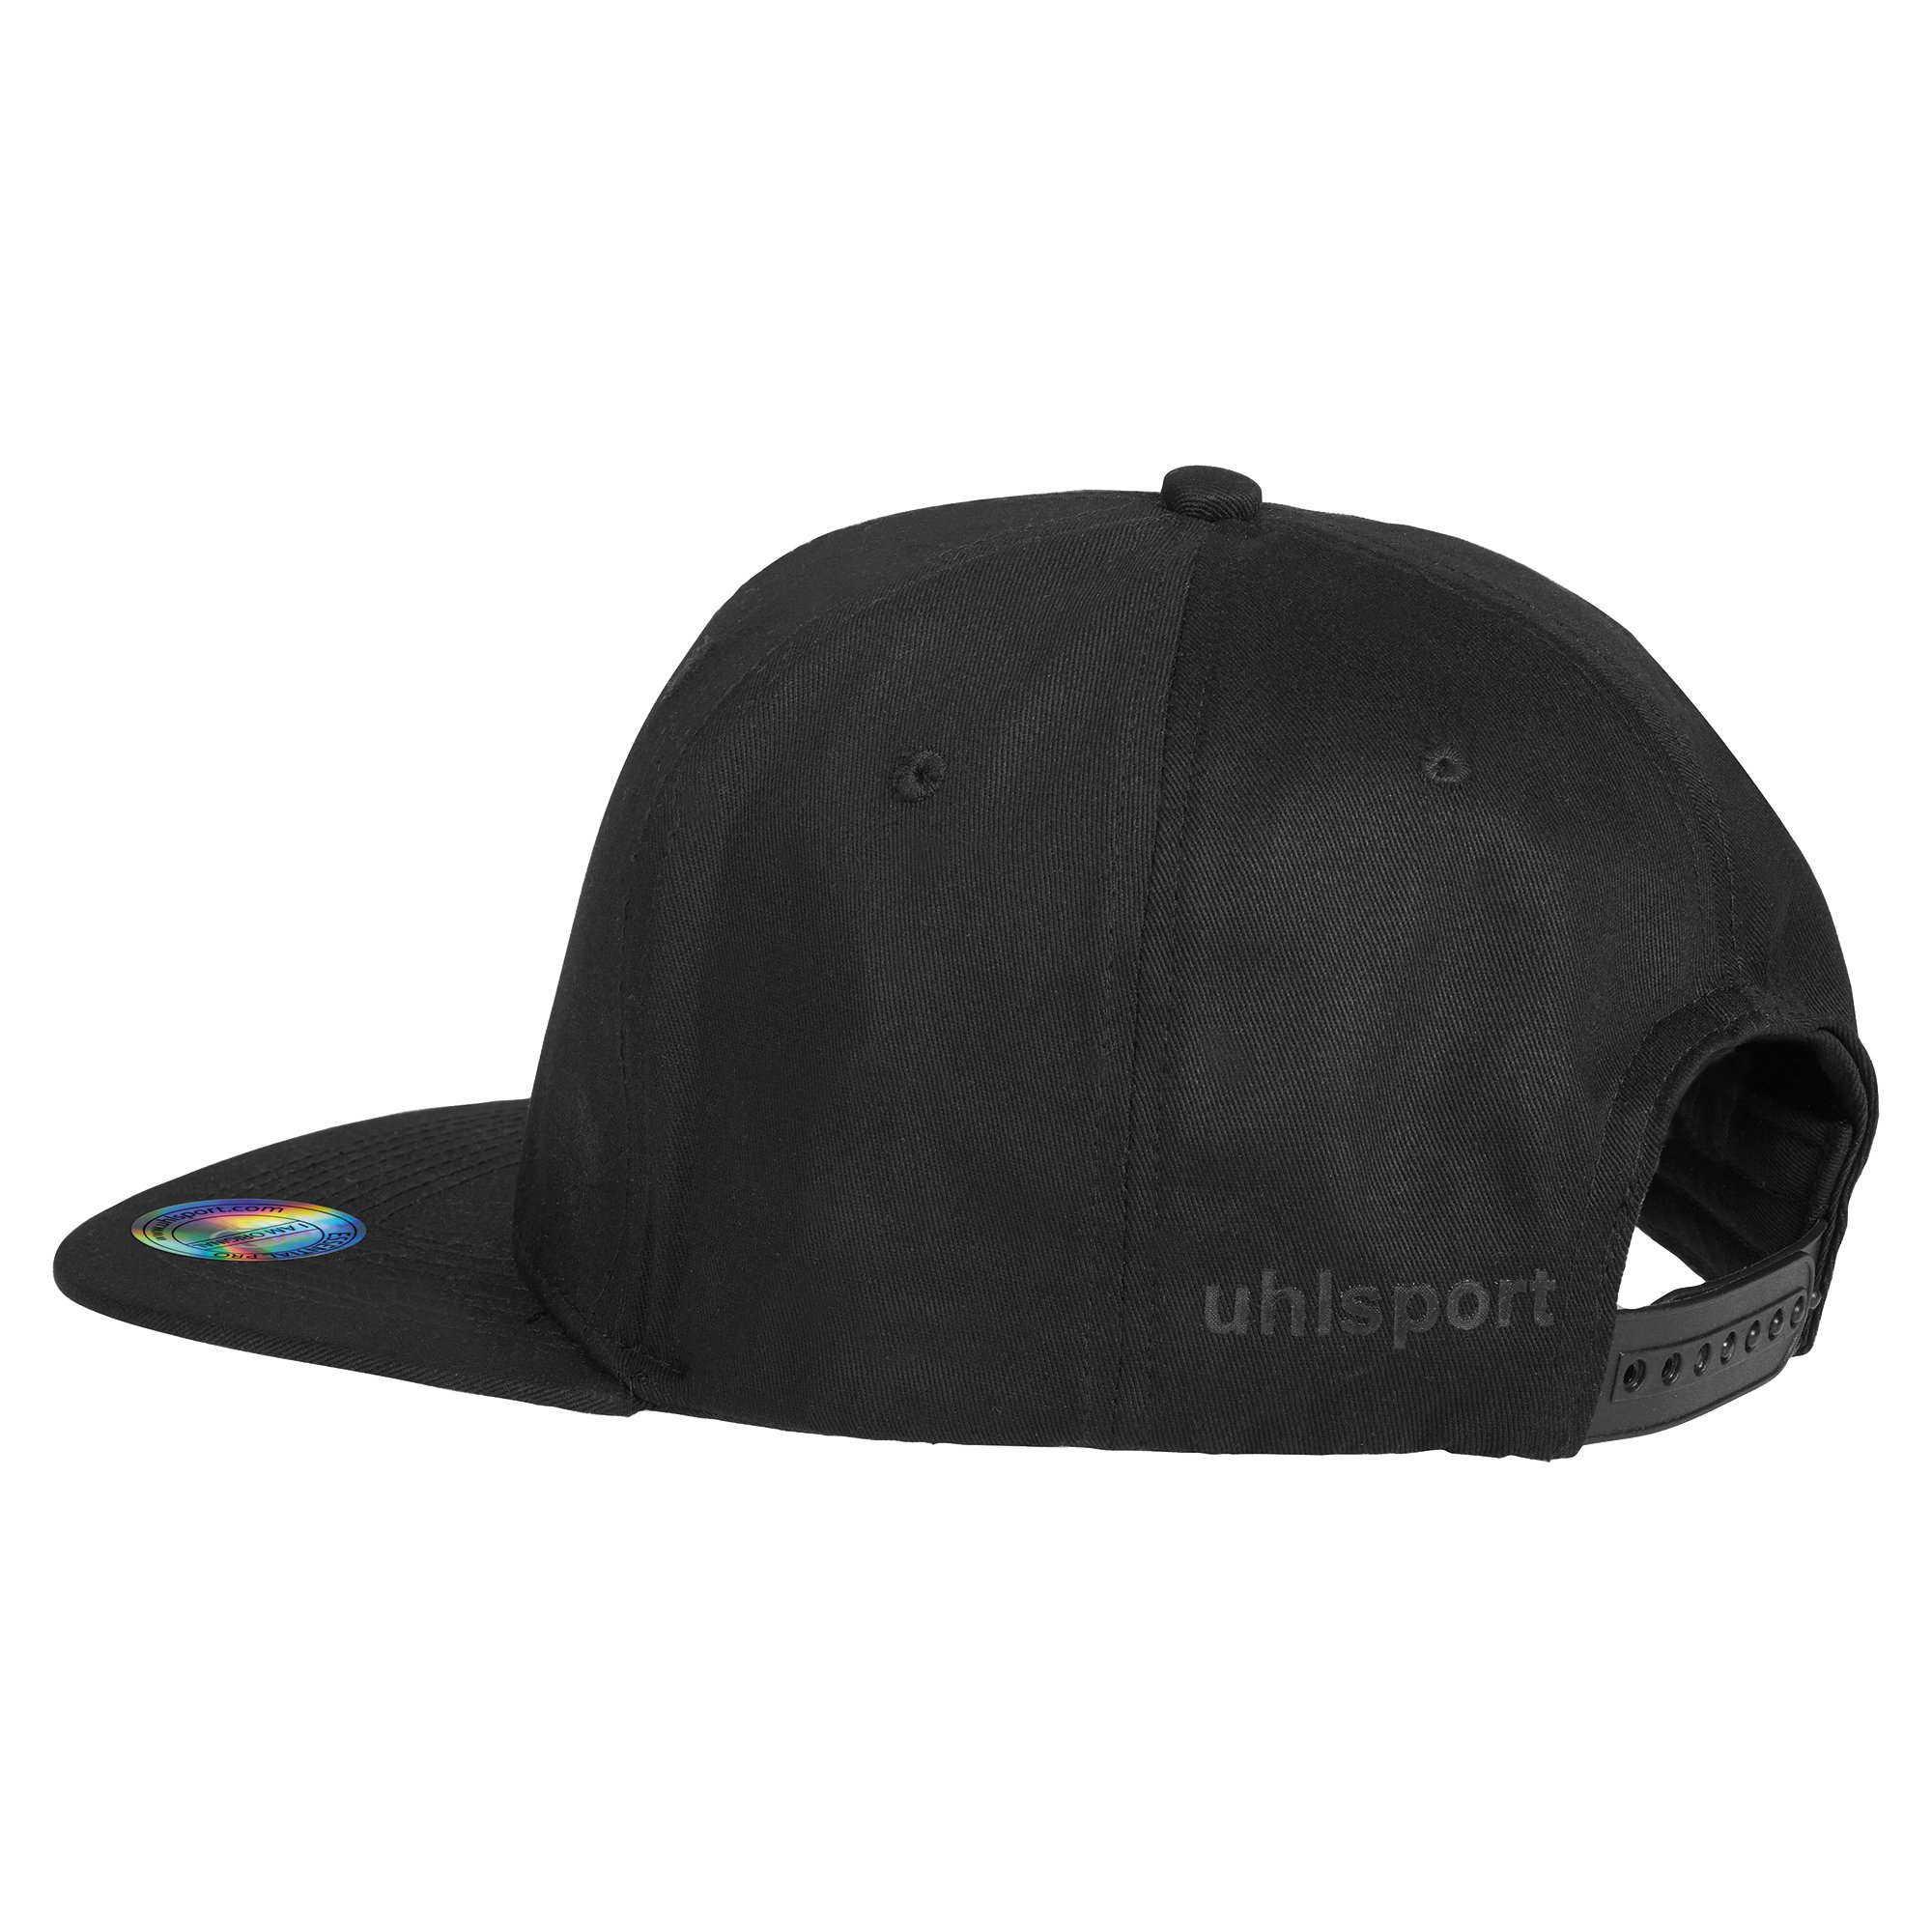 Uhlsport Essential Pro Flat Cap